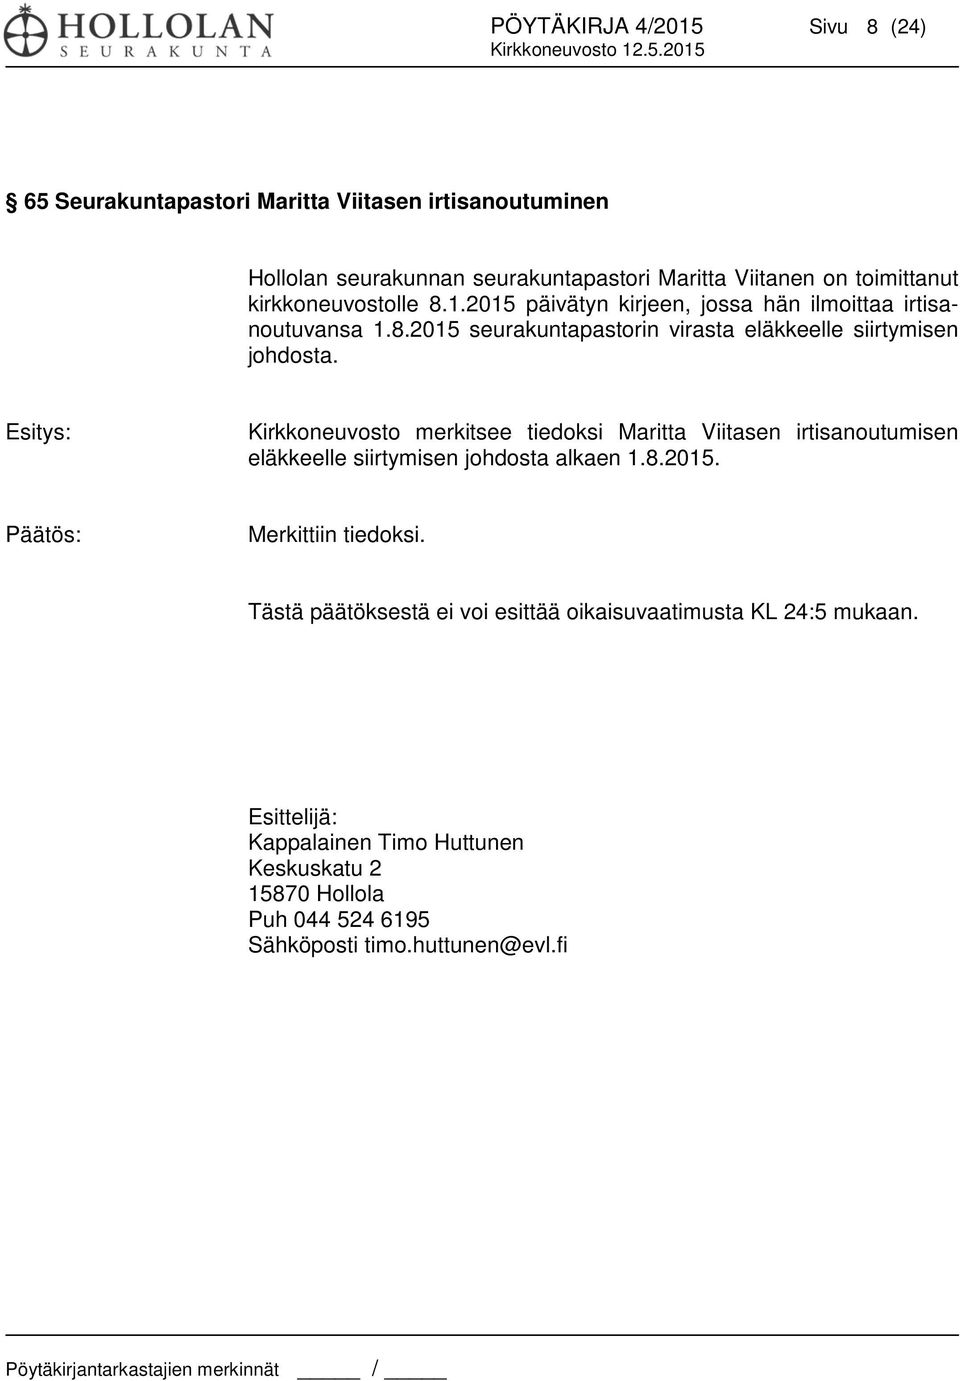 Kirkkoneuvosto merkitsee tiedoksi Maritta Viitasen irtisanoutumisen eläkkeelle siirtymisen johdosta alkaen 1.8.2015. Päätös: Merkittiin tiedoksi.